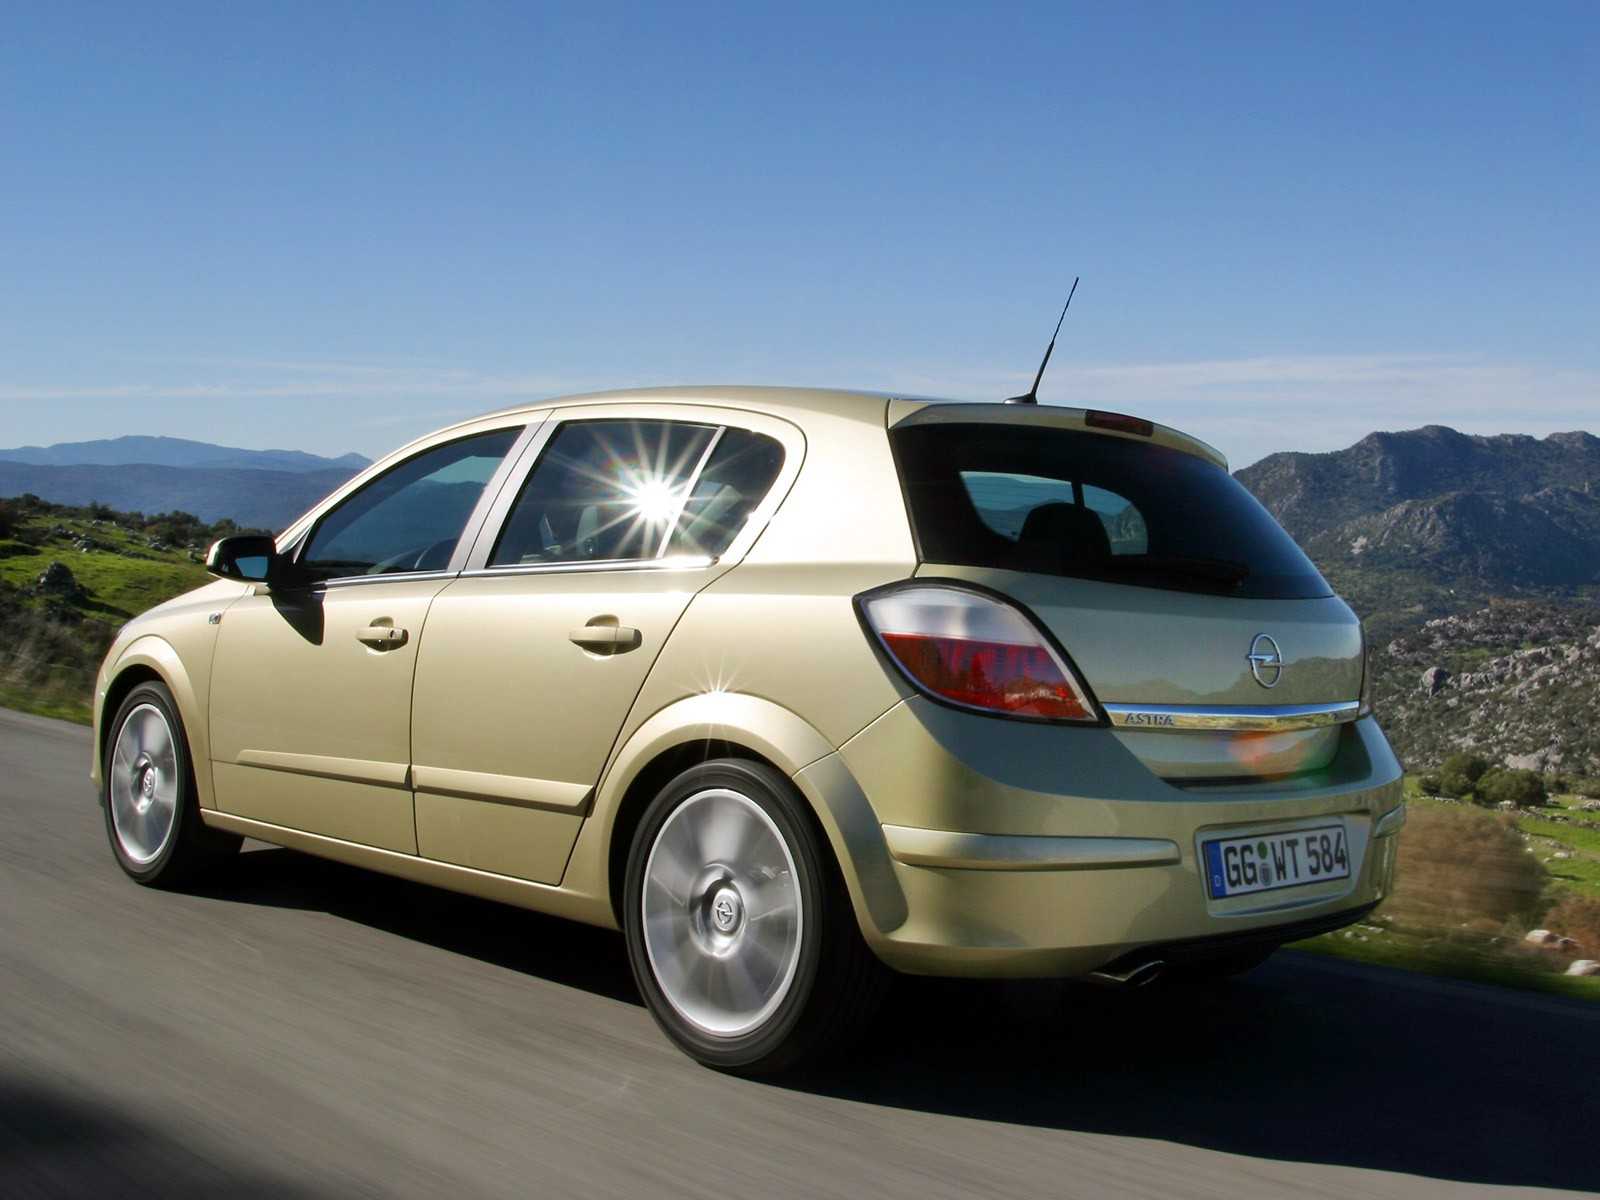 Opel astra hatchback (опель астра хэтчбек) - продажа, цены, отзывы, фото: 2569 объявлений